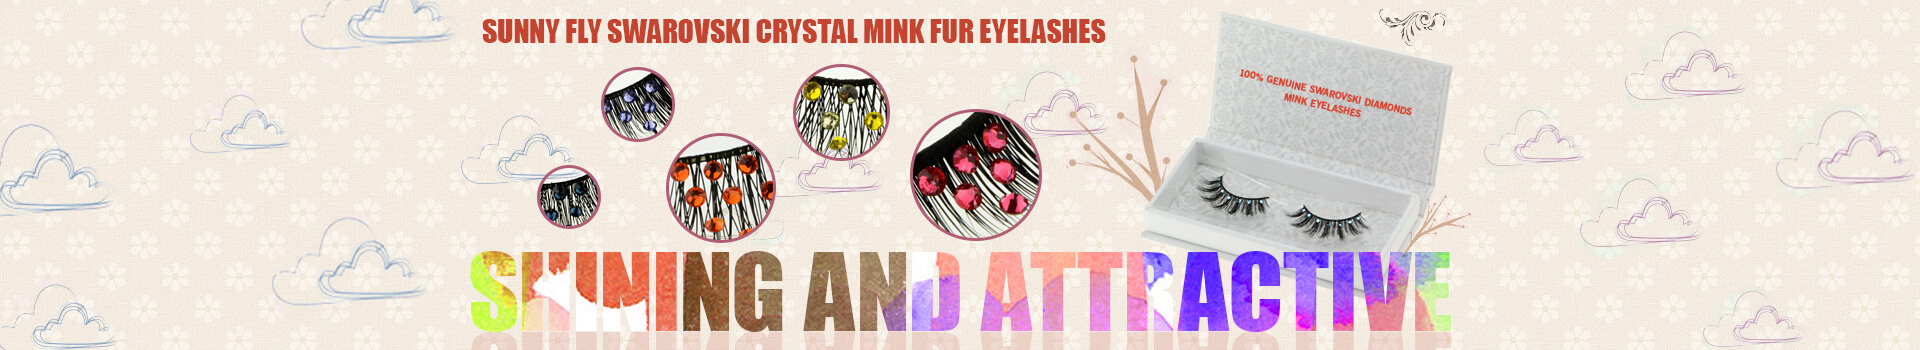 Swarovski Crystal Mink Fur Eyelashes MS24